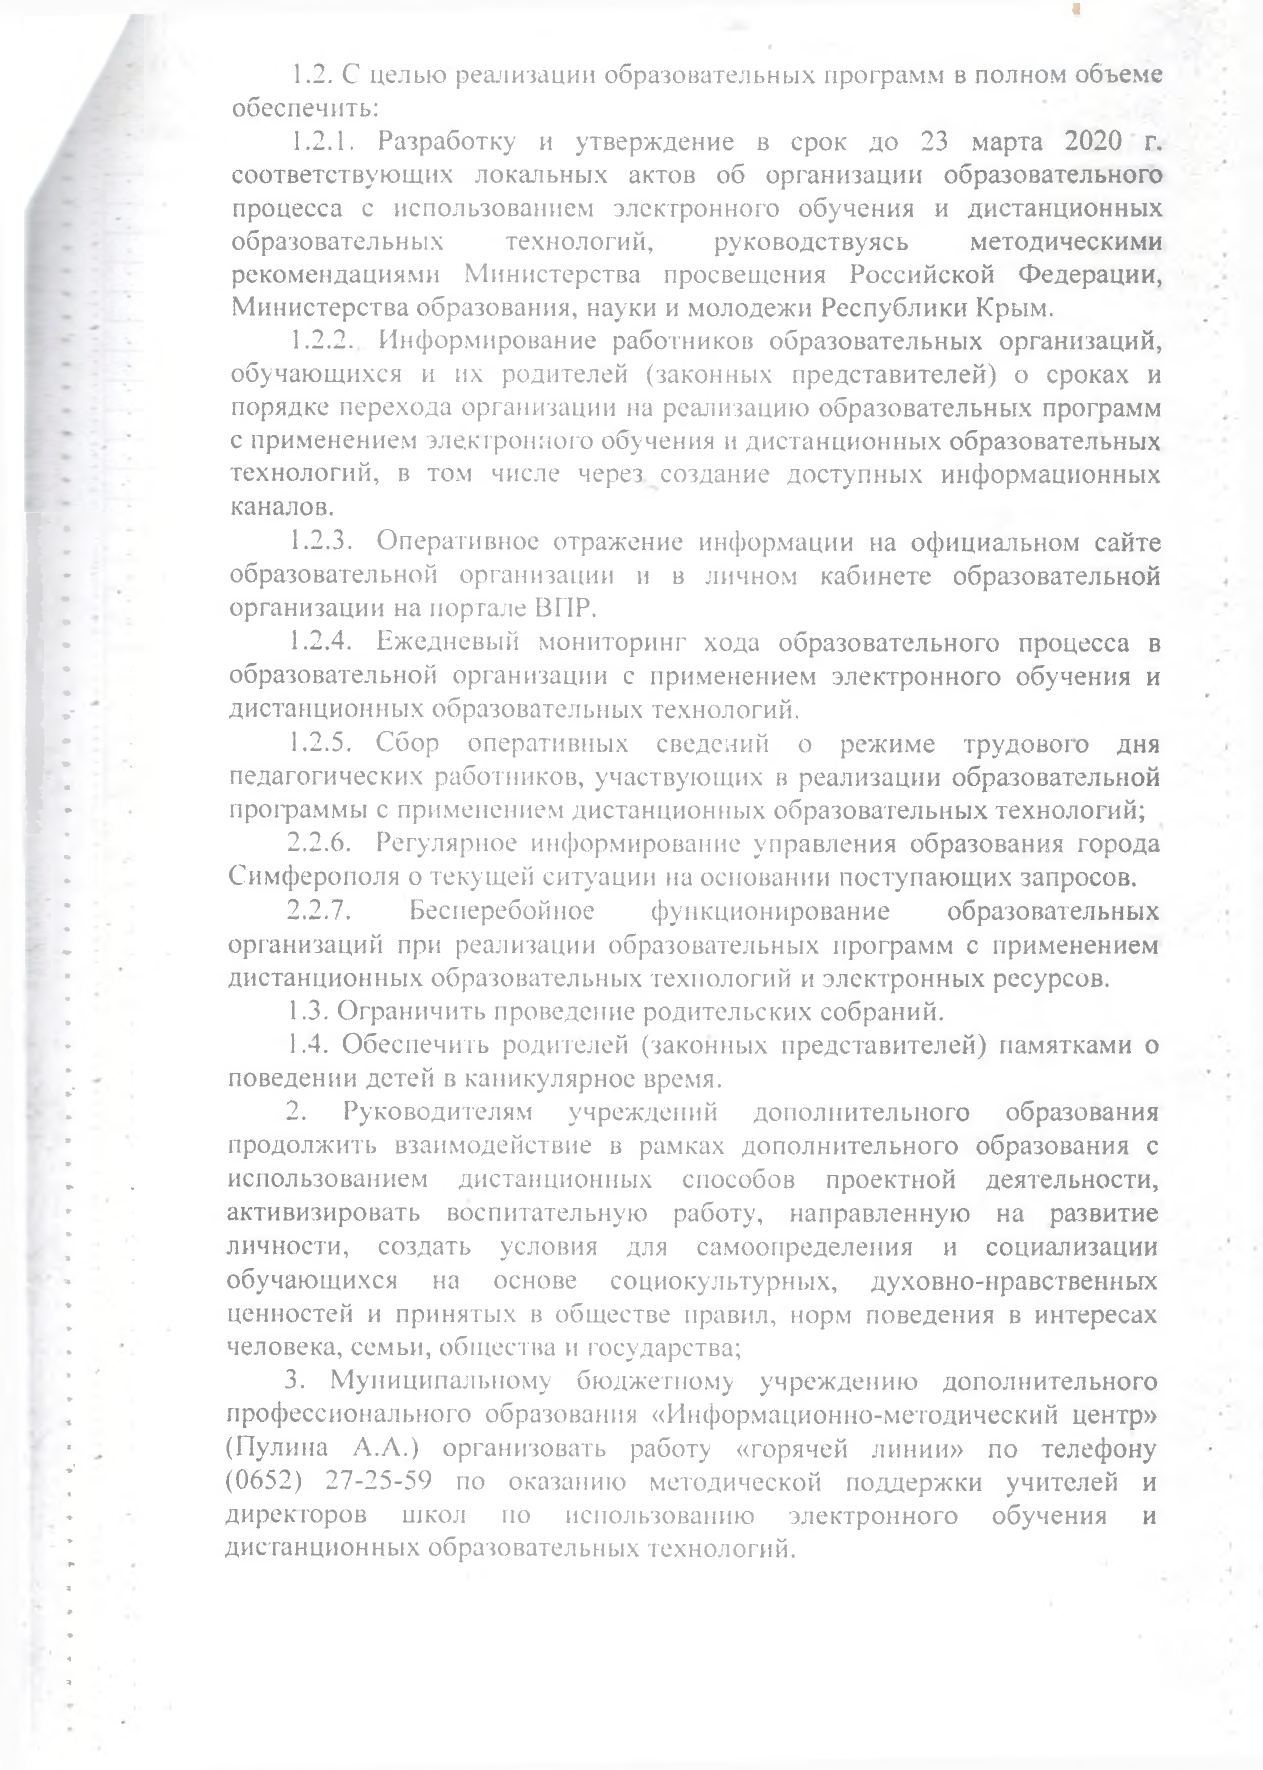 нормативные документы коронавирус page 0007